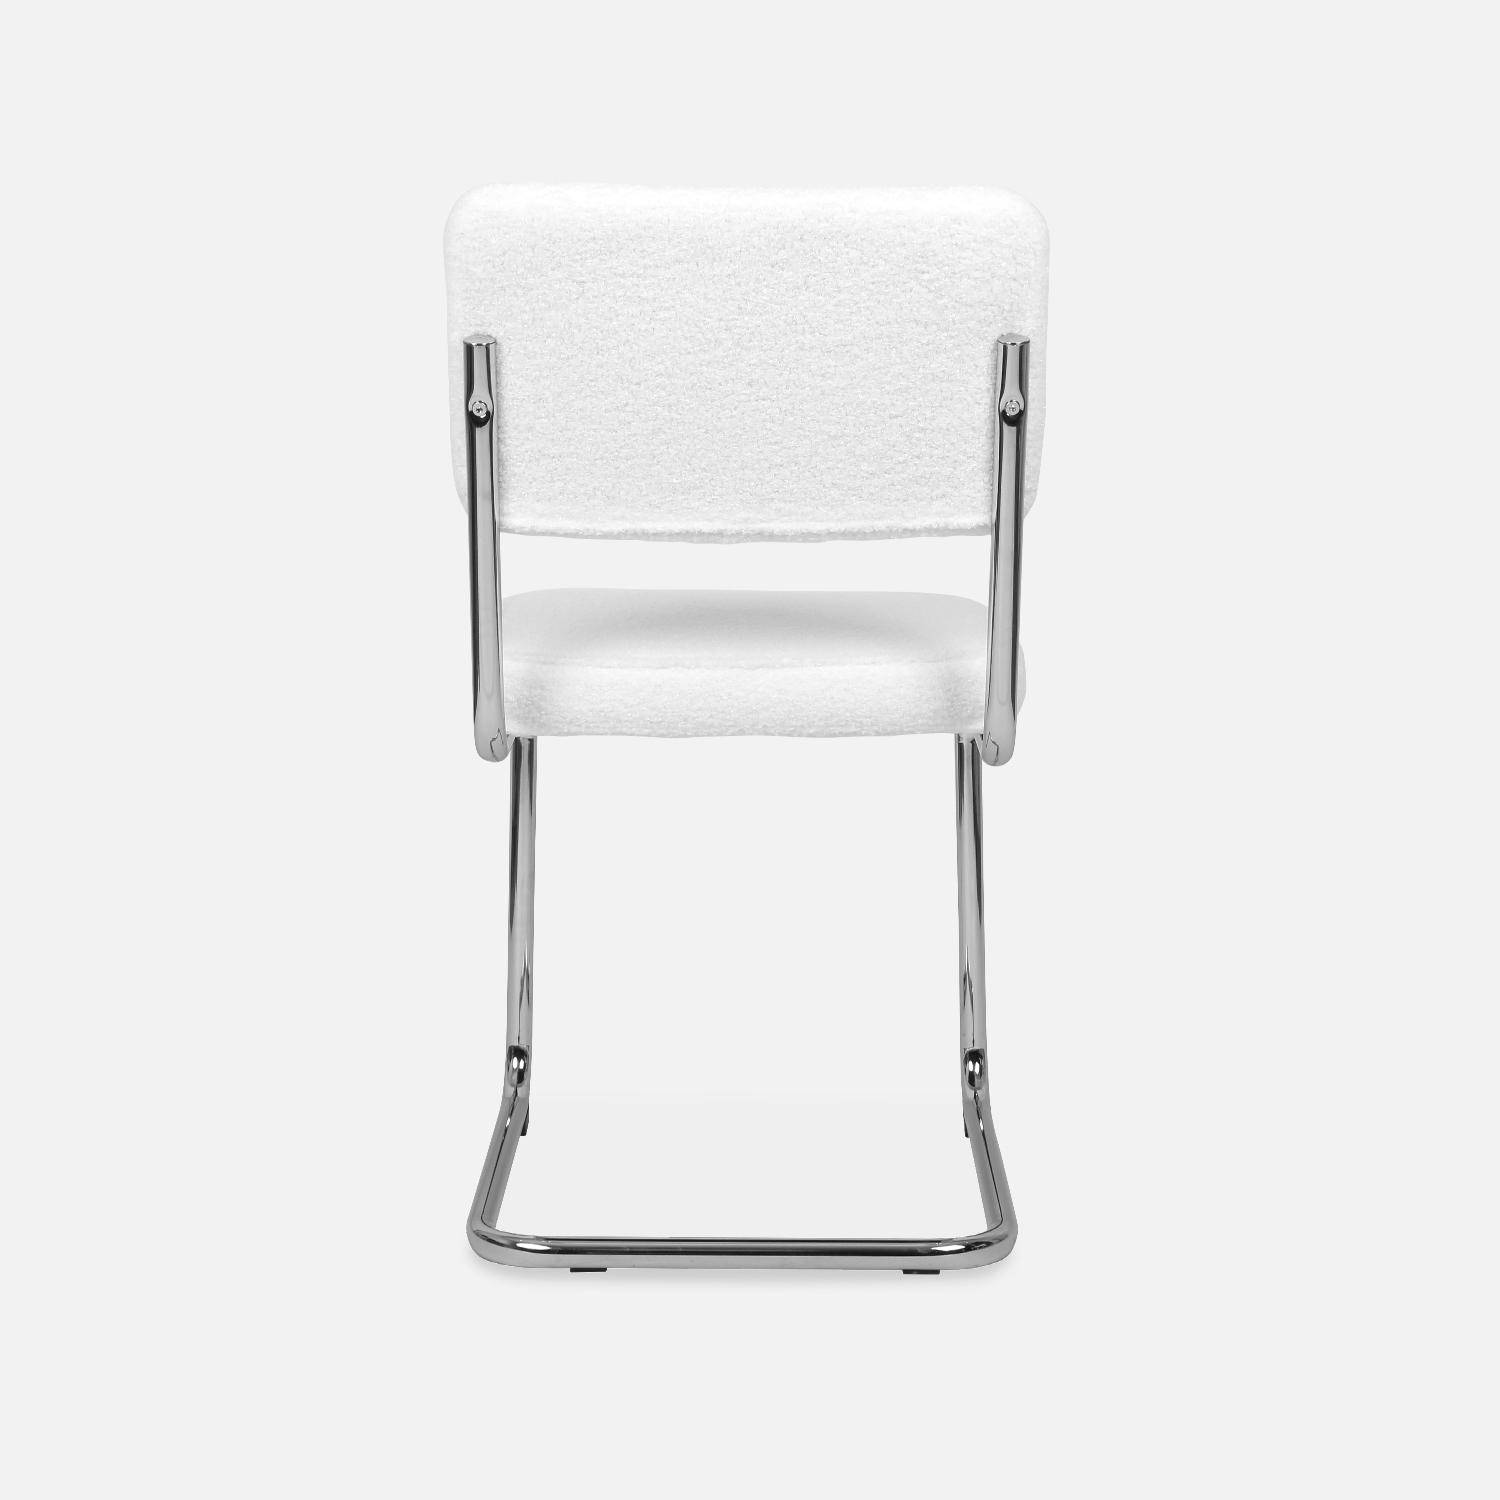 2 cadeiras cantilever - Maja - com caracóis brancos, 46 x 54,5 x 84,5cm Photo6